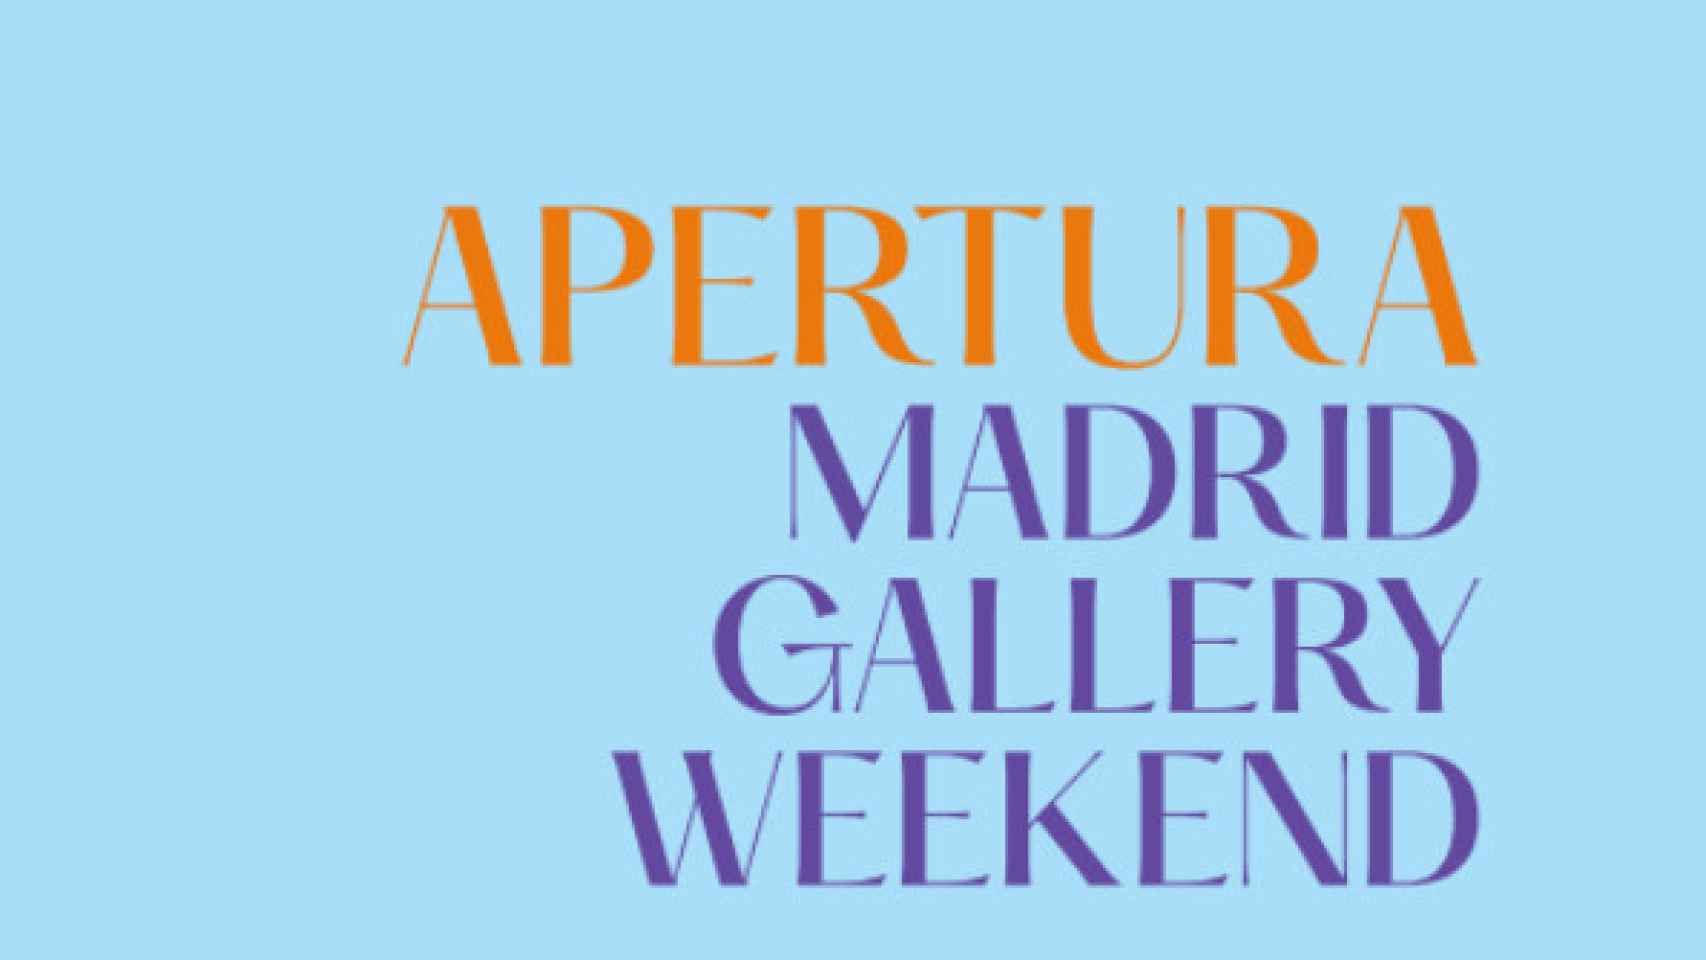 Un plan perfecto en la capital si te gusta el arte: Madrid Gallery Weekend